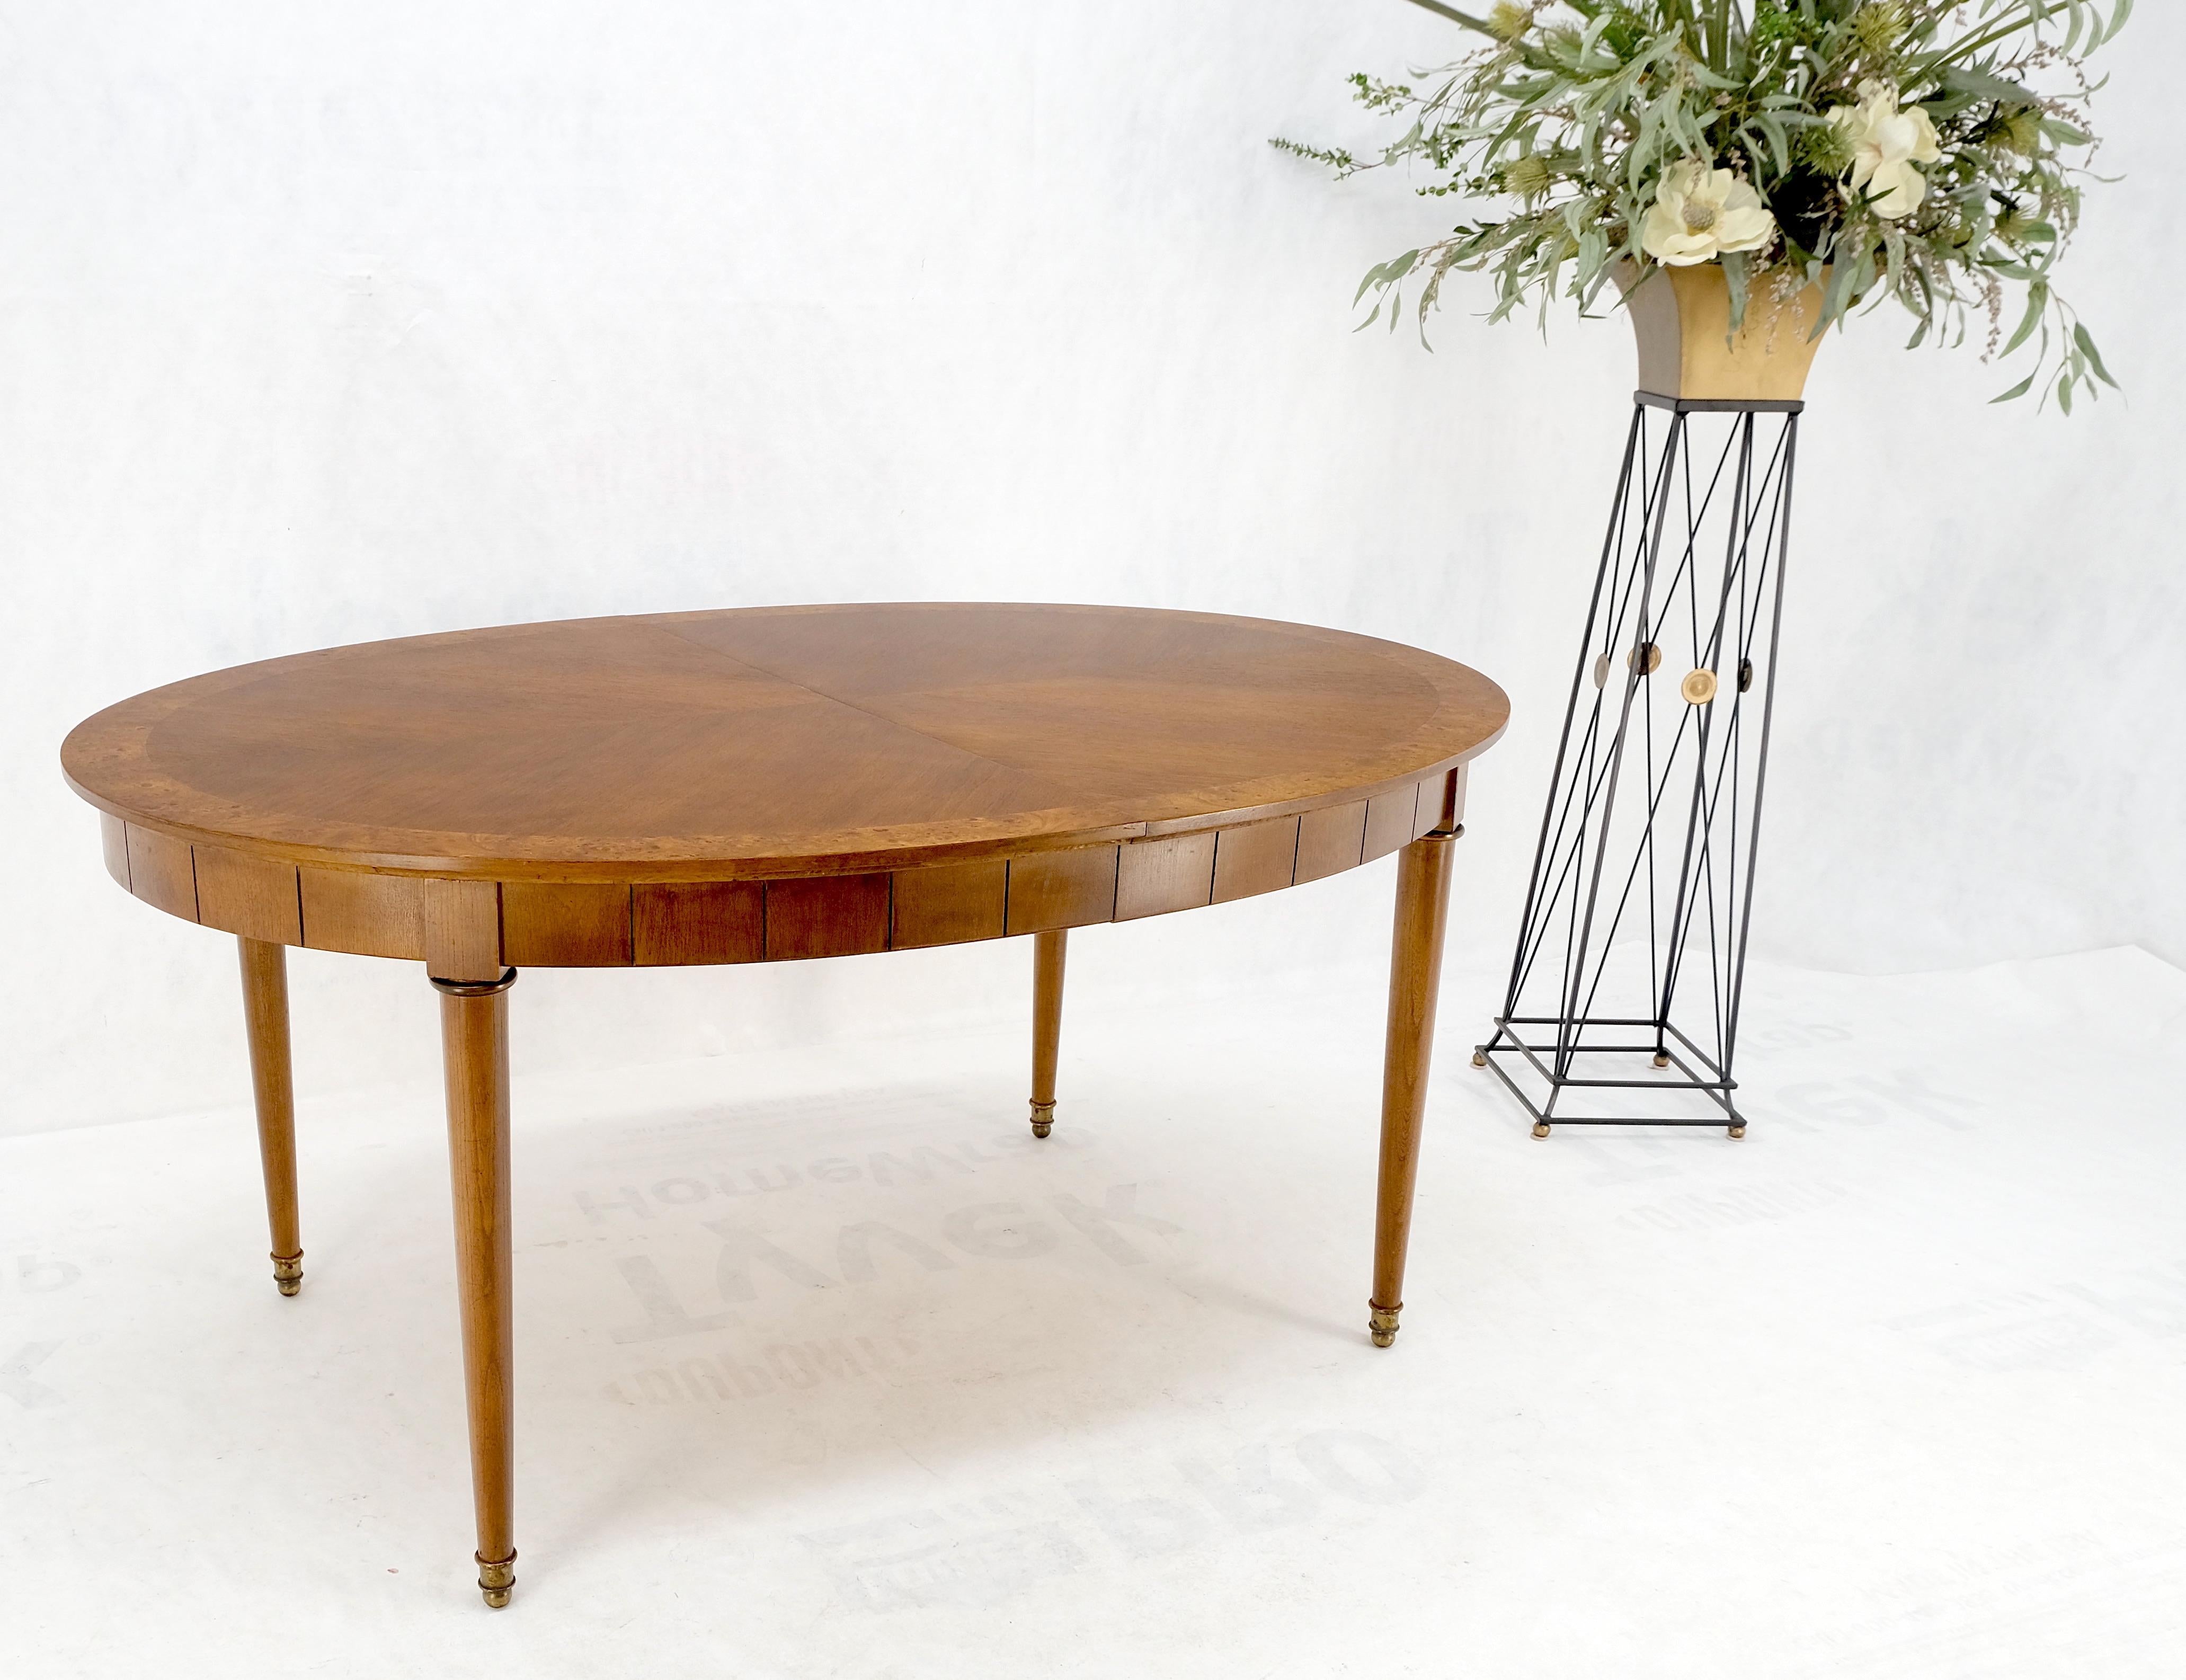 Mid-Century Modern Oval Banded Burl Wood Tapered Legs One Leaf Dining Table MINT!
Ein Blatt misst 12 Zoll im Durchmesser.
Gesamtlänge des Tisches 76 Zoll.